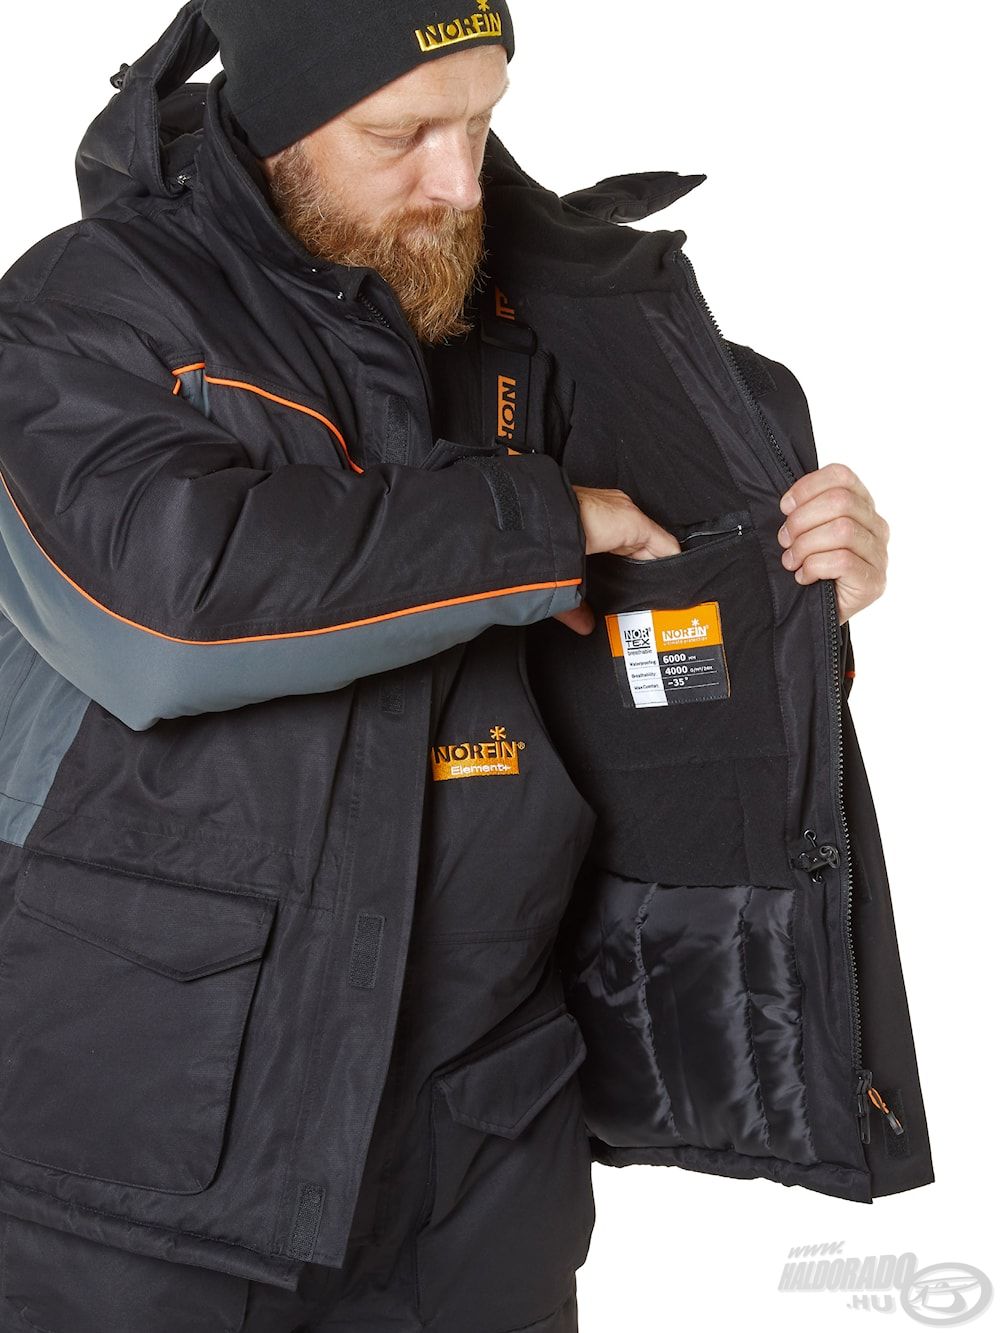 Sok hasznos külső és belső zseb található a kabáton